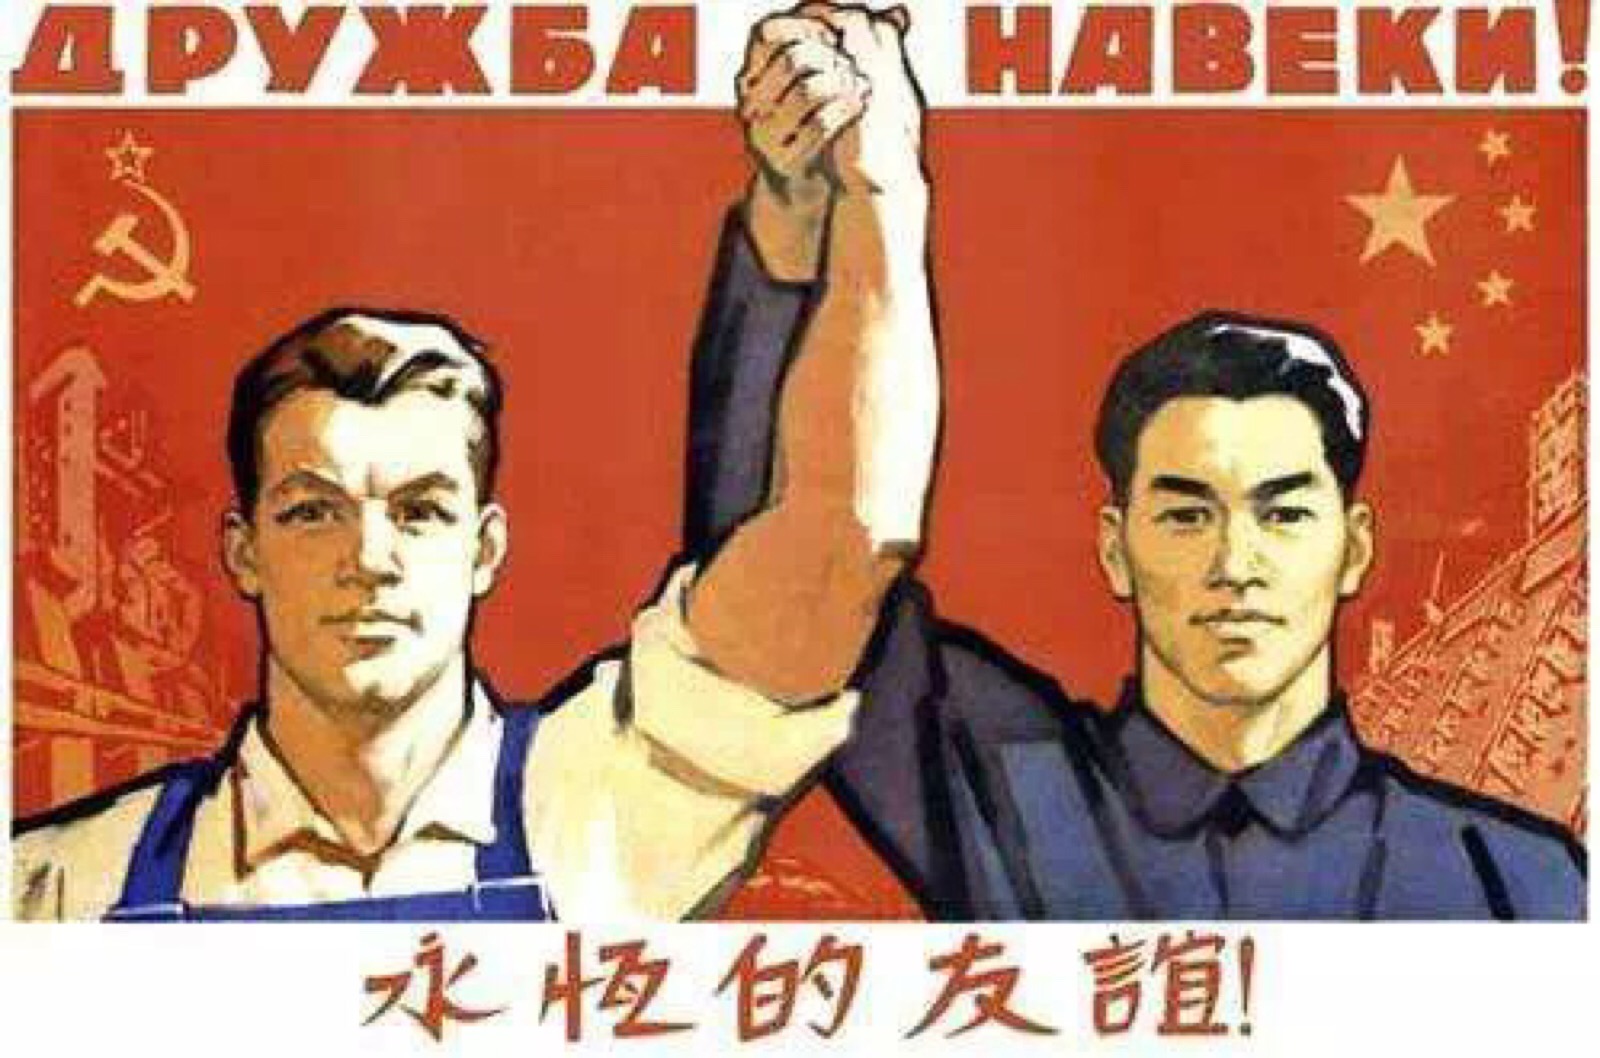 苏联- 堆糖,美图壁纸兴趣社区